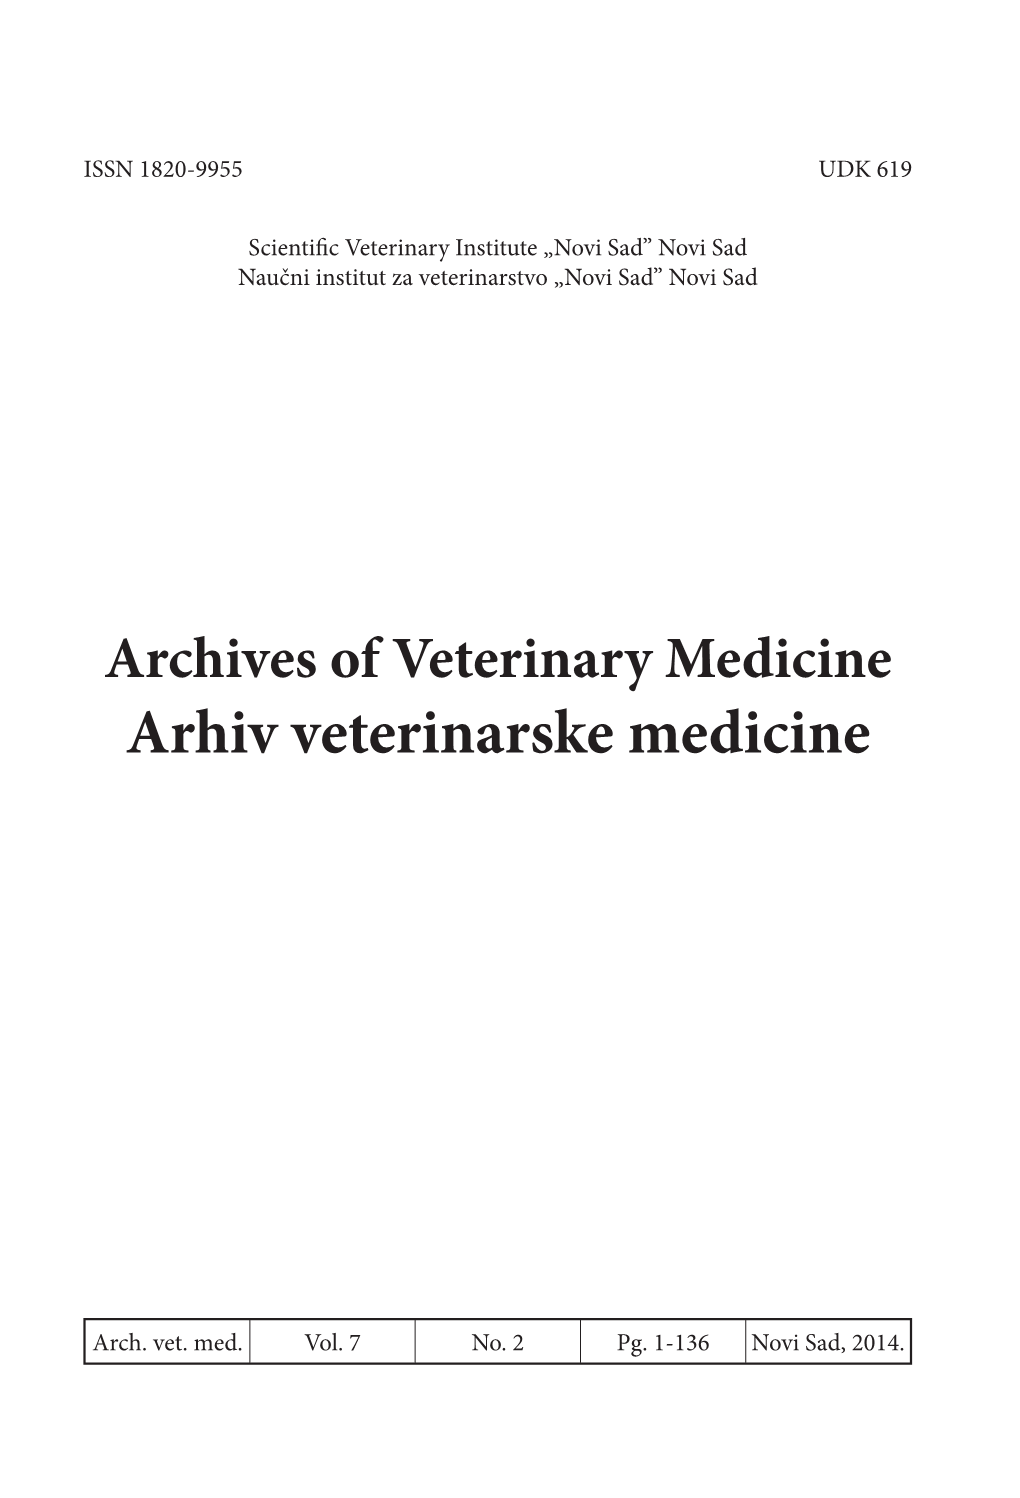 Arhiv Veterinarske Medicine